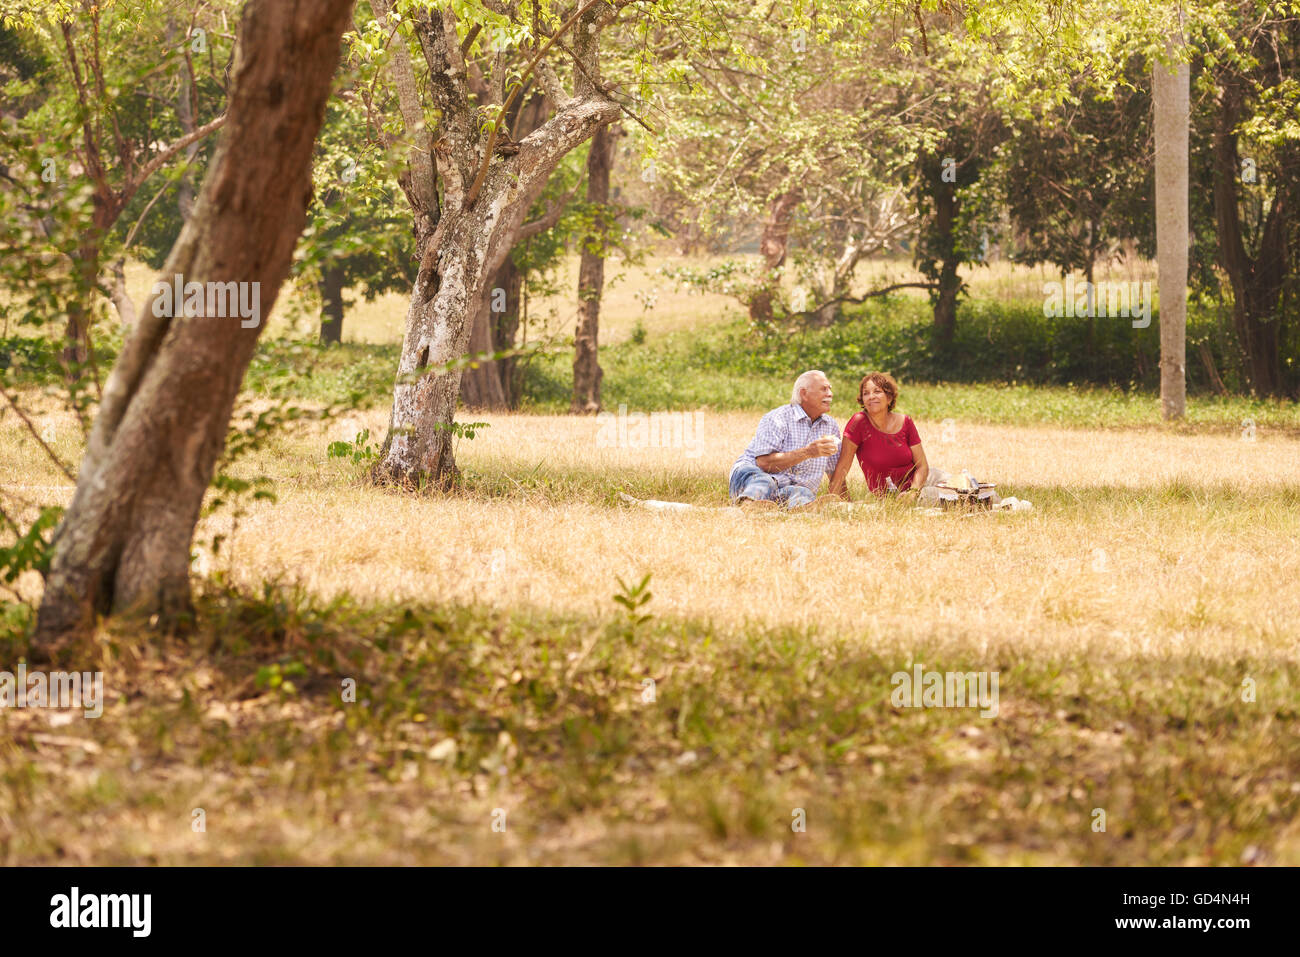 Alte Menschen, älteres Paar, älterer Mann und Frau im Park. Pensionierte Senioren Essen bei Picknick Stockfoto